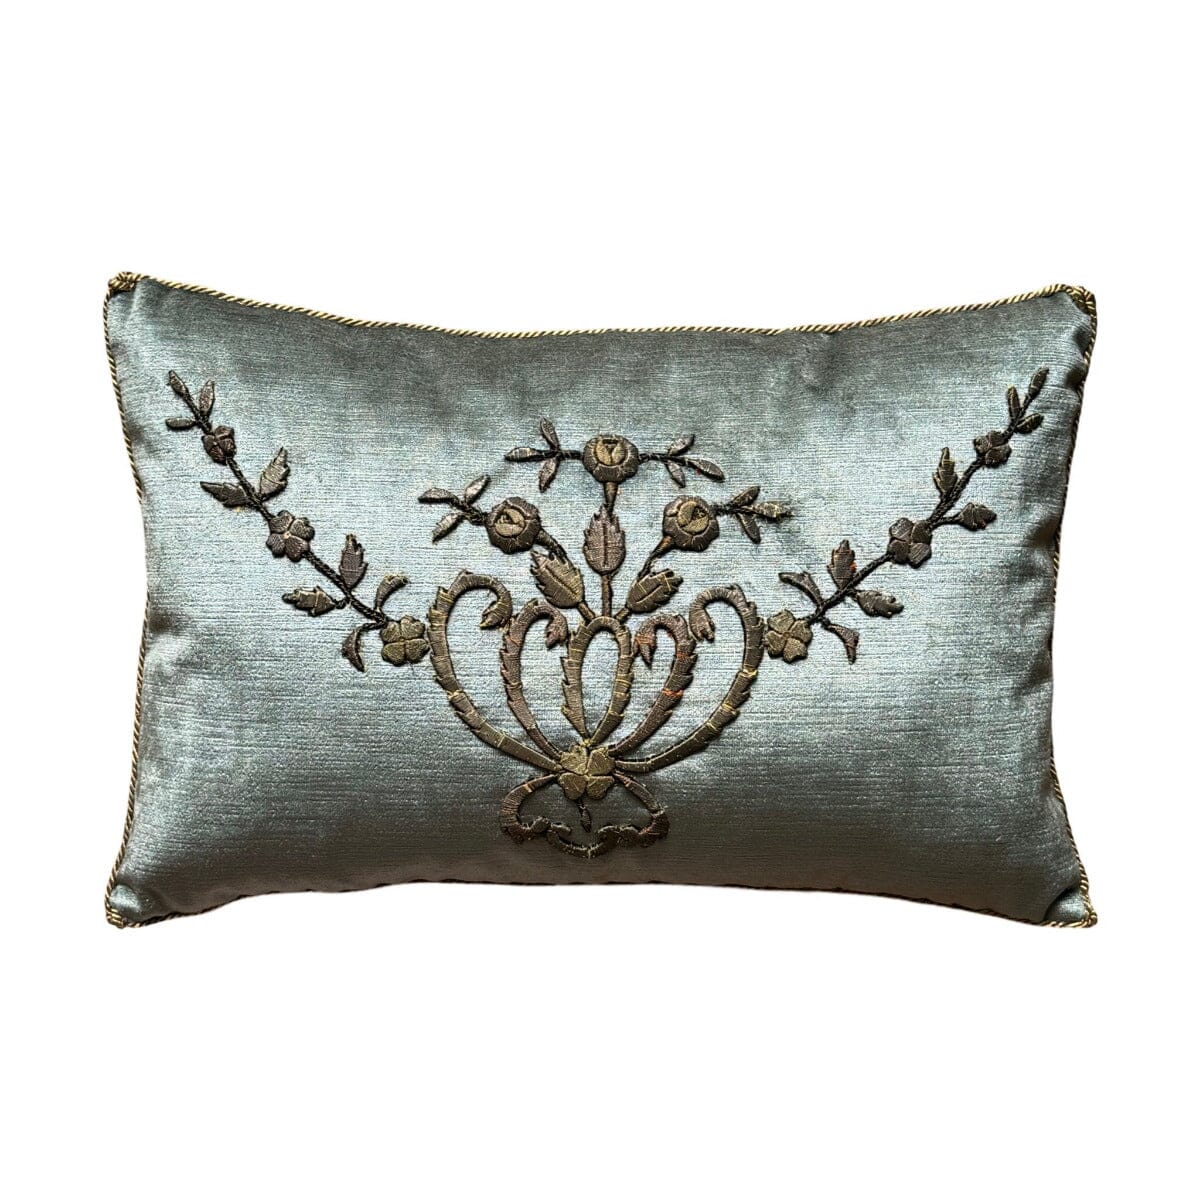 Antique Ottoman Empire Gold Metallic Embroidery (#E022324A&B | 13 x 19 1/2") New Pillows B. Viz Design 